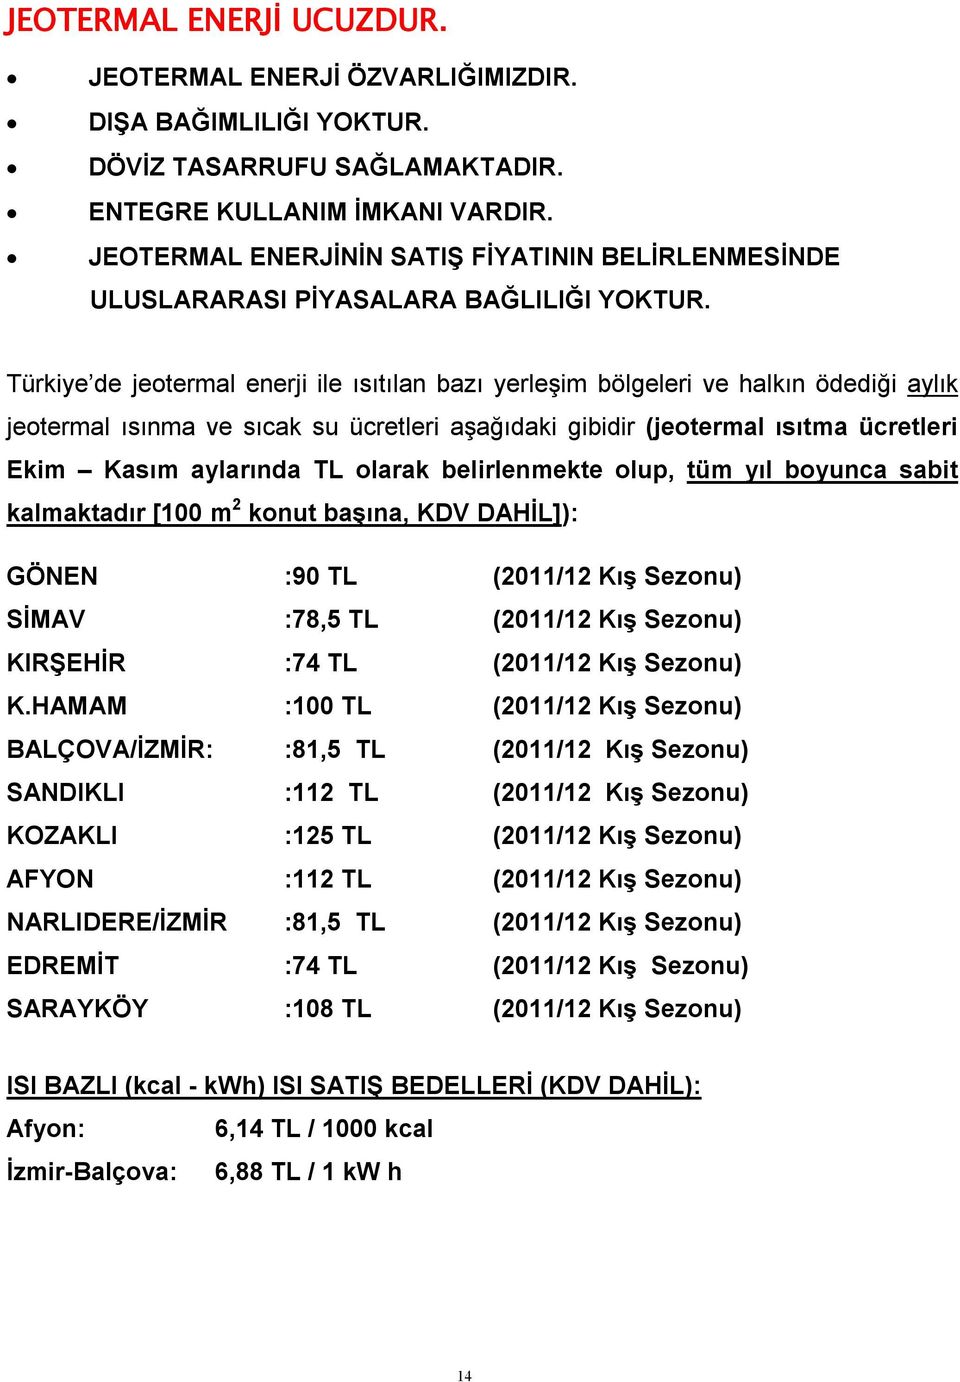 Türkiye de jeotermal enerji ile ısıtılan bazı yerleşim bölgeleri ve halkın ödediği aylık jeotermal ısınma ve sıcak su ücretleri aşağıdaki gibidir (jeotermal ısıtma ücretleri Ekim Kasım aylarında TL